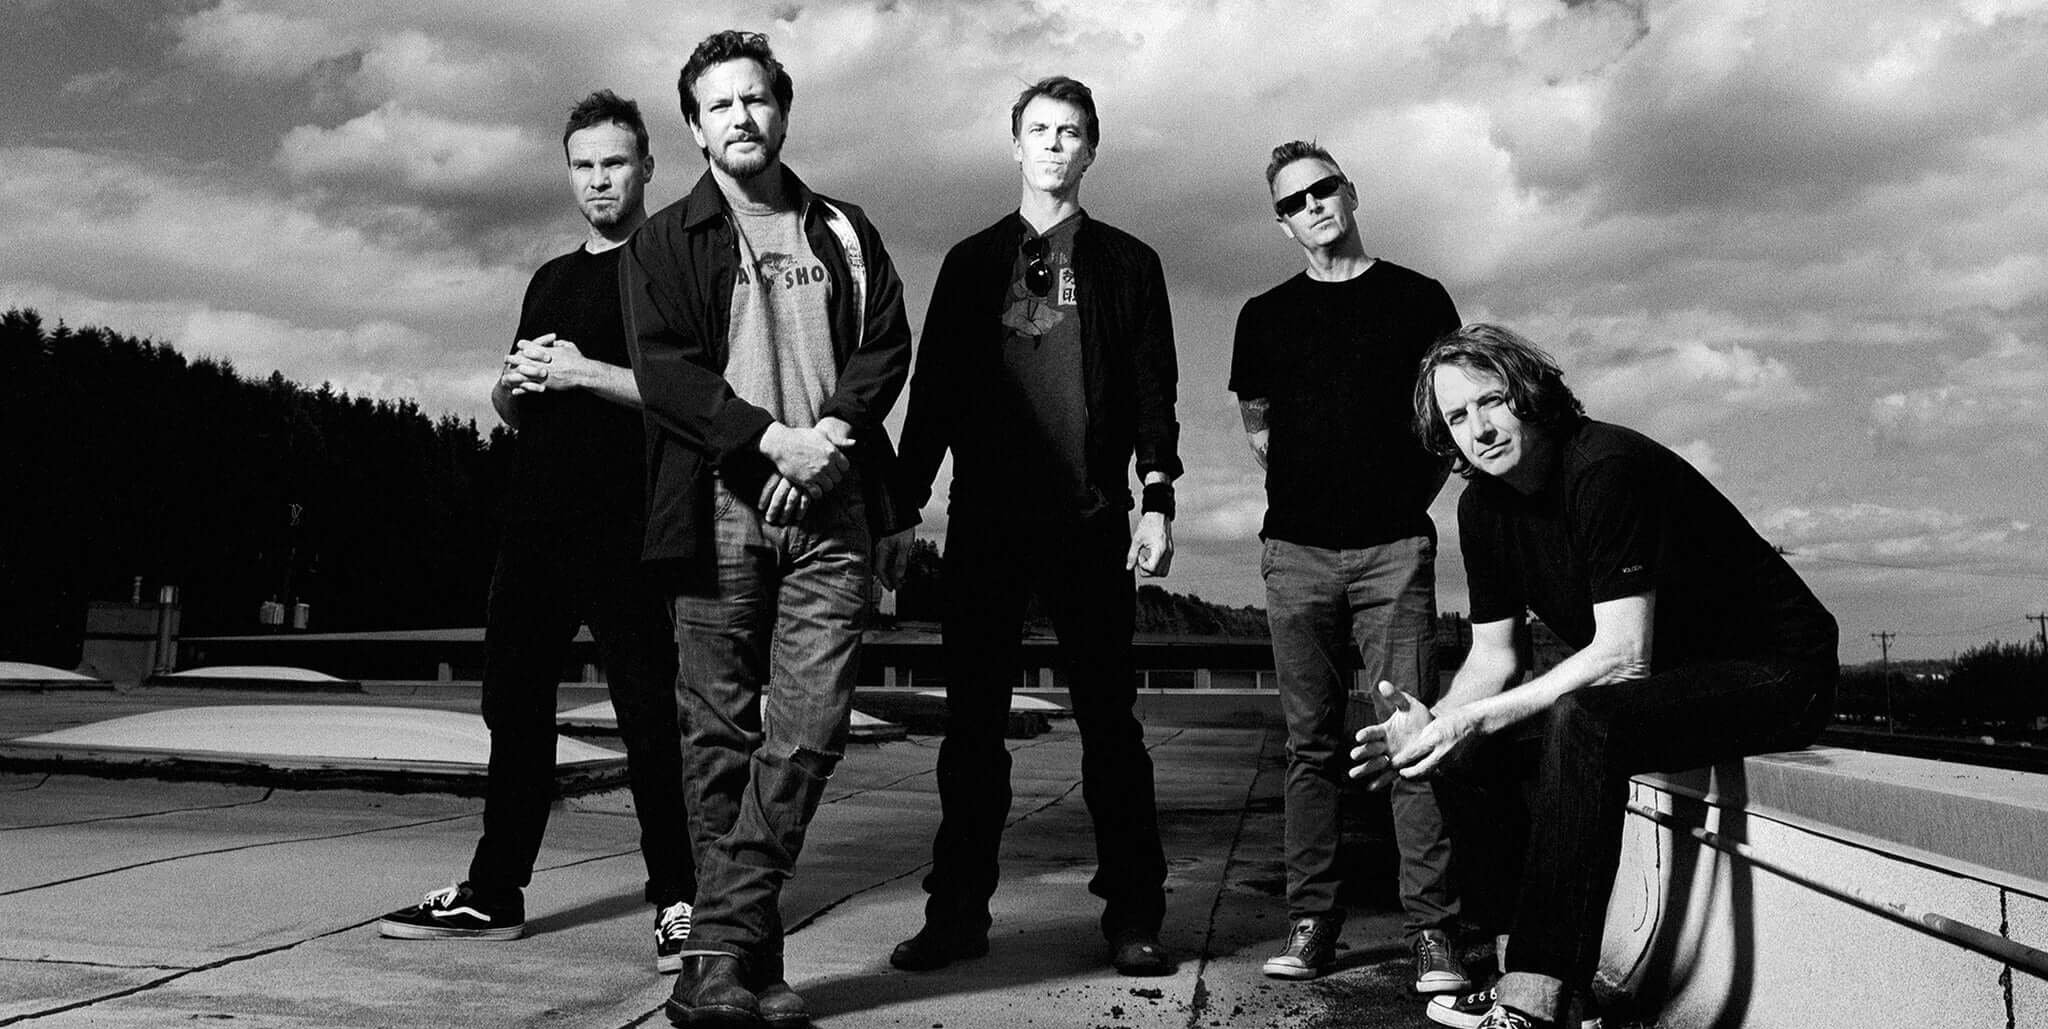 Pearl Jam dio un emotivo homenaje a los 9 fans fallecidos durante su show en Roskilde